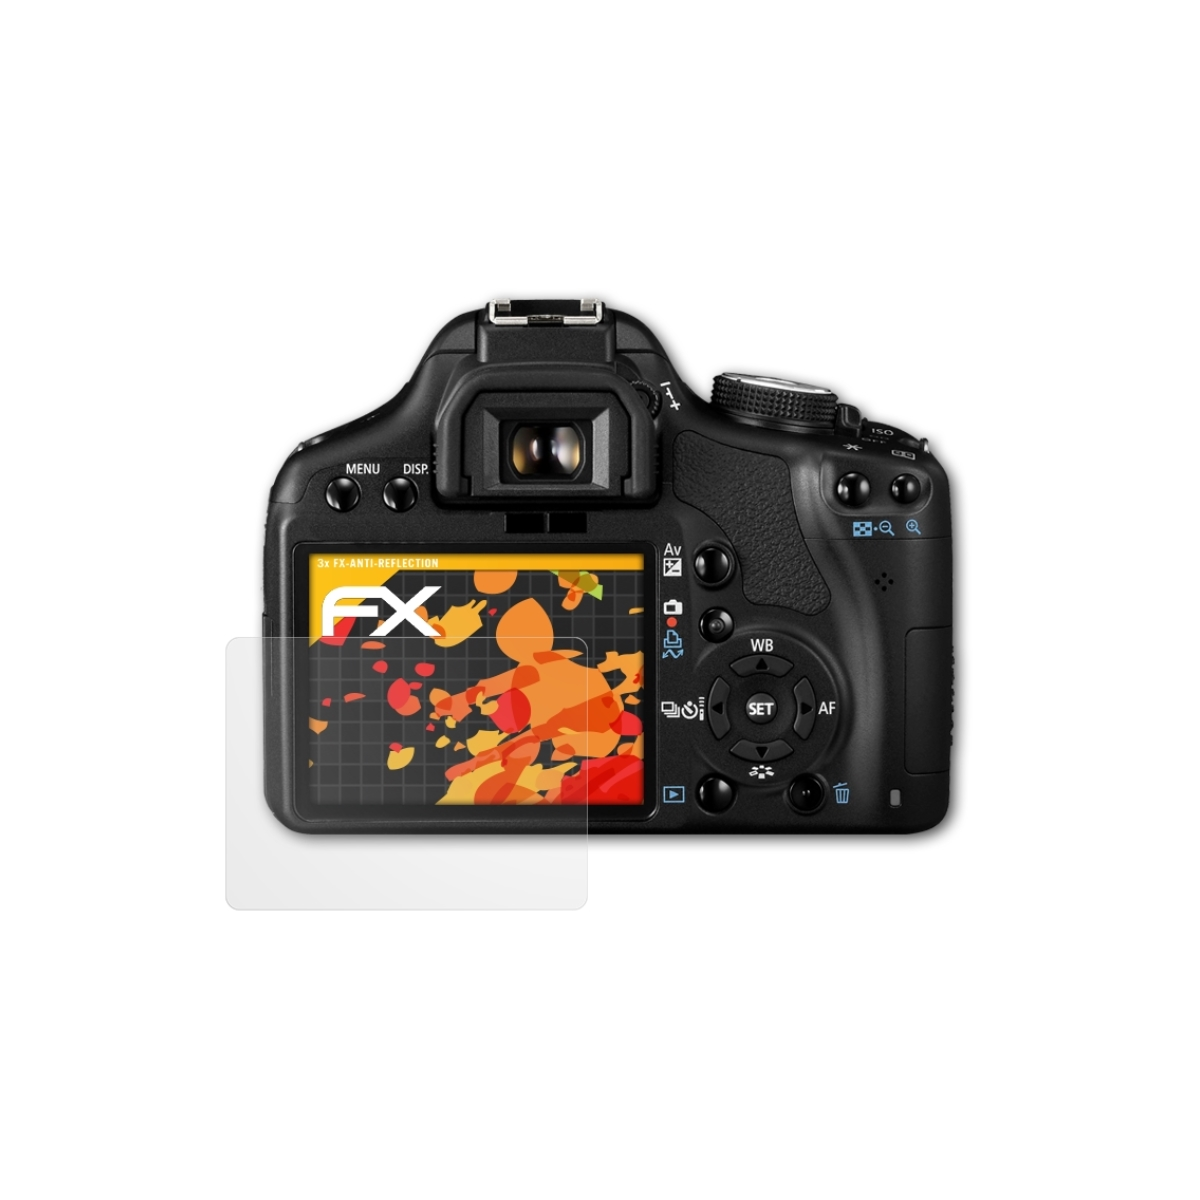 EOS Displayschutz(für 450D) ATFOLIX FX-Antireflex Canon 3x